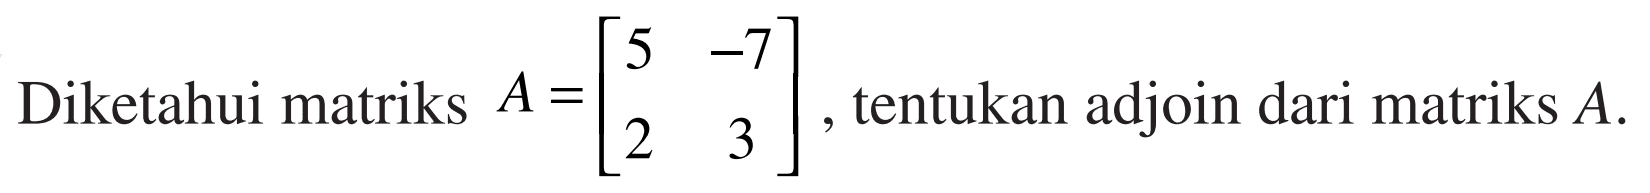 Diketahui matriks A=[5 -7 2 3], tentukan adjoin dari matriks A.